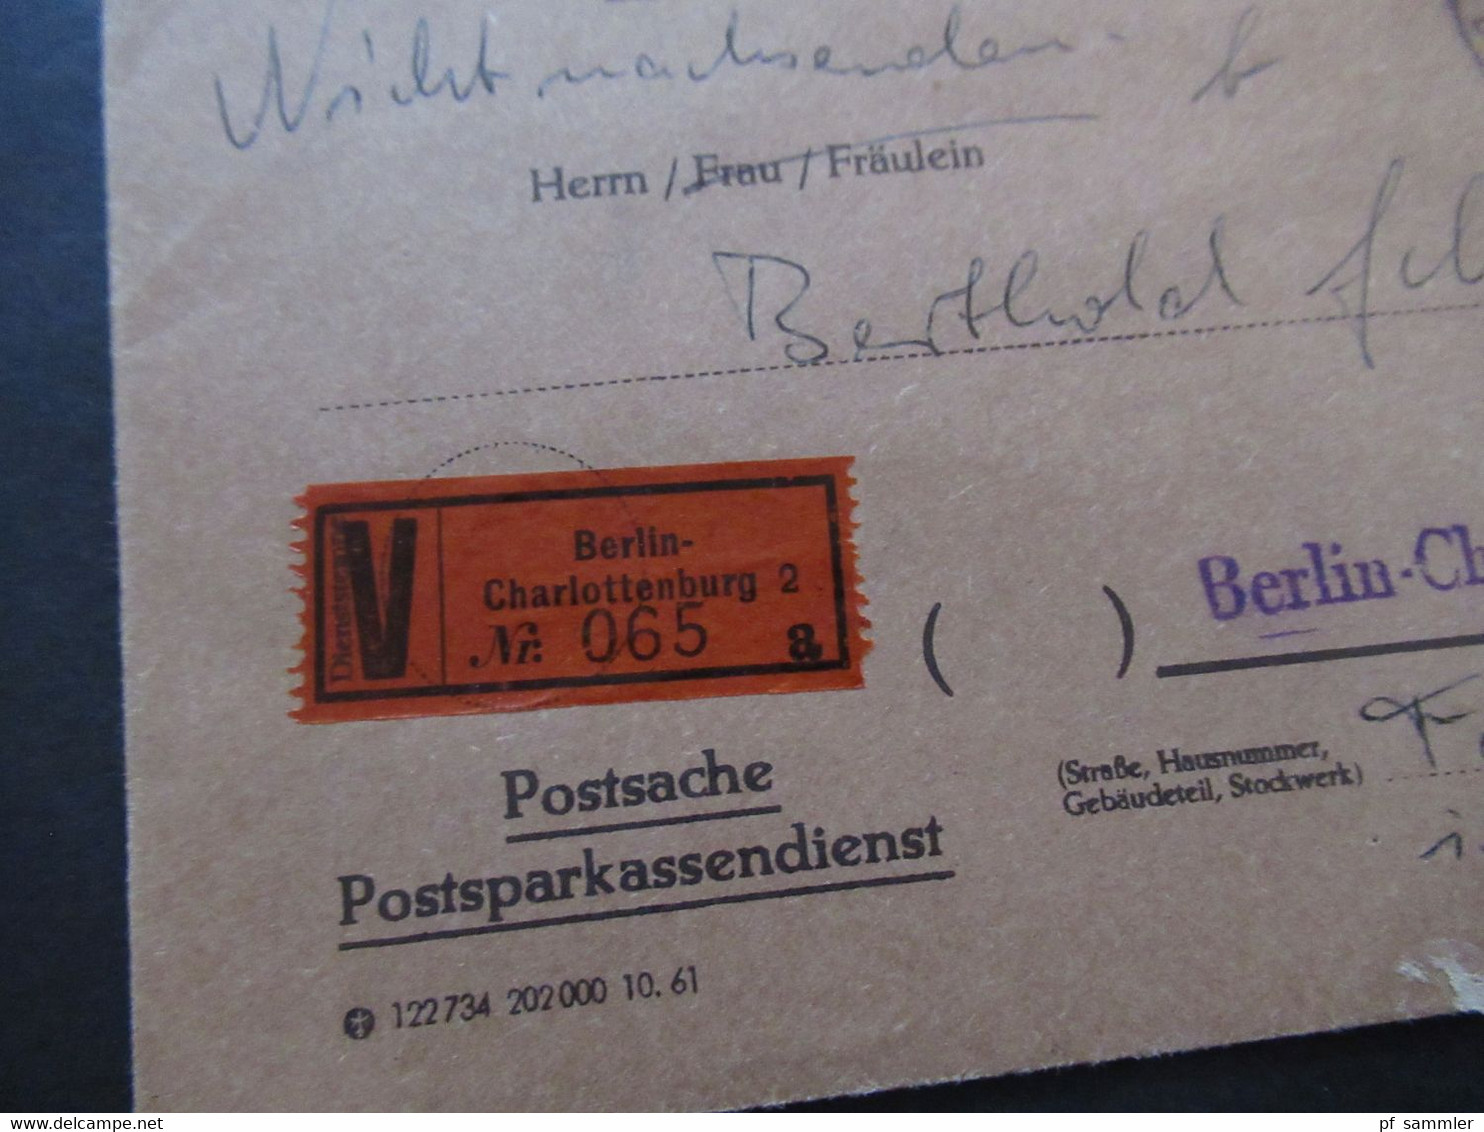 Berlin (West) 1962 Wertbrief V-Zettel Berlin Charlottenburg 2 Postsache Postsparkasendienst Postsparbuch Wert 500 DM - Lettres & Documents